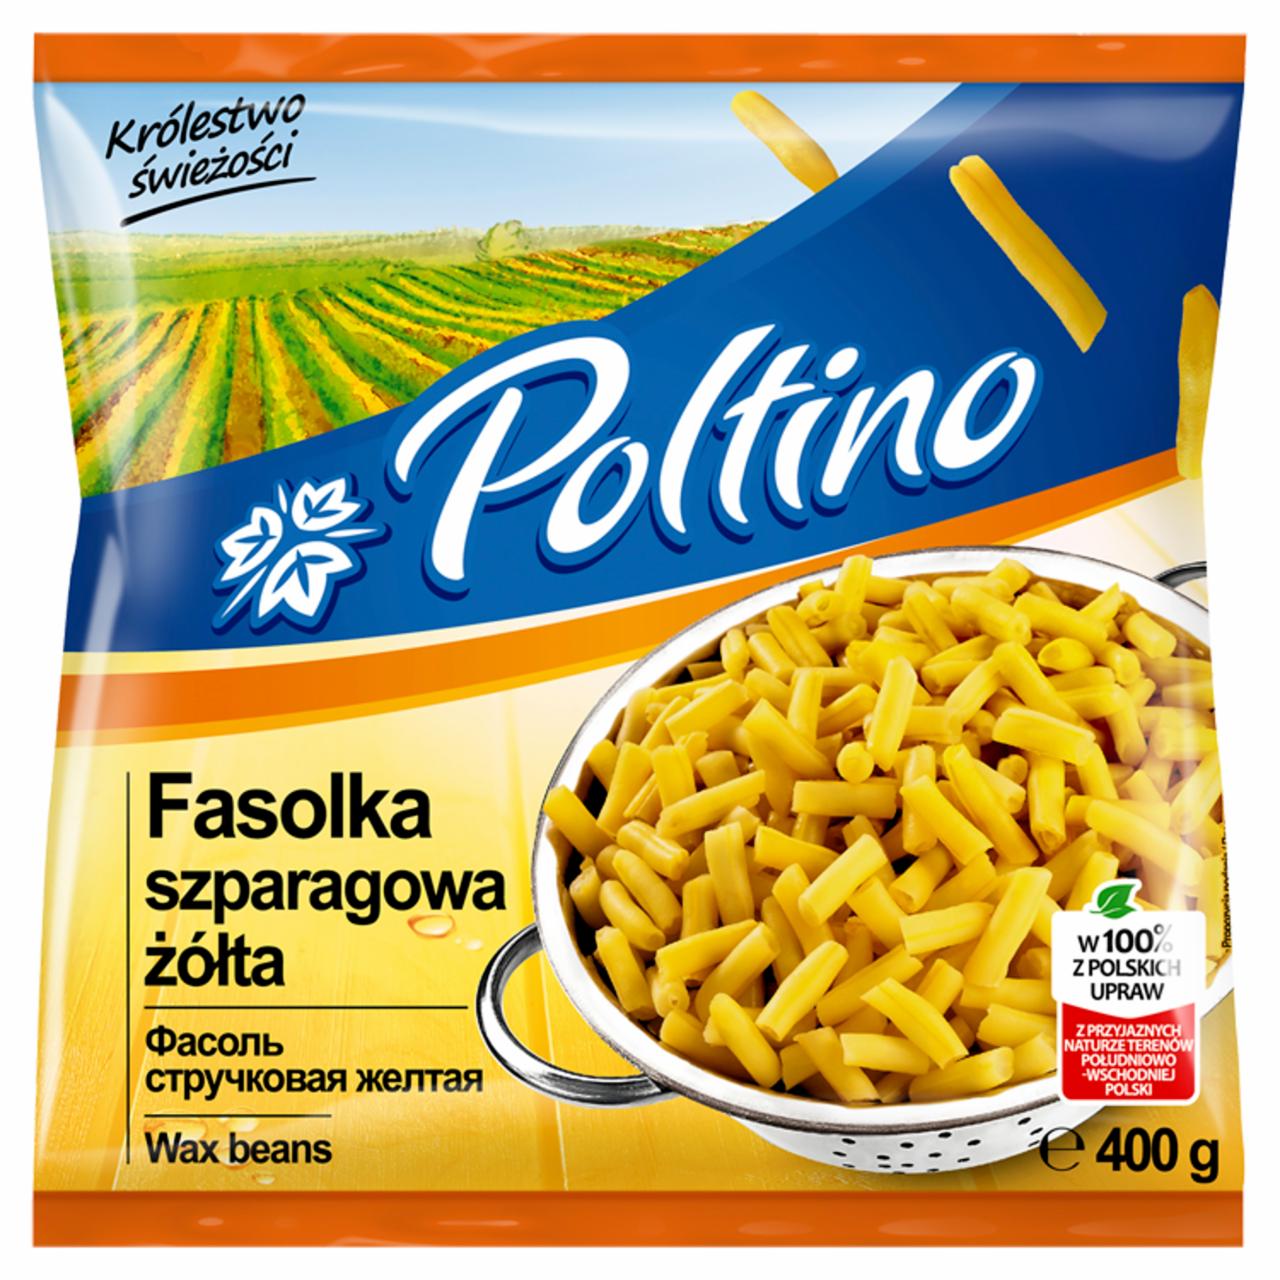 Zdjęcia - Poltino Fasolka szparagowa żółta 400 g